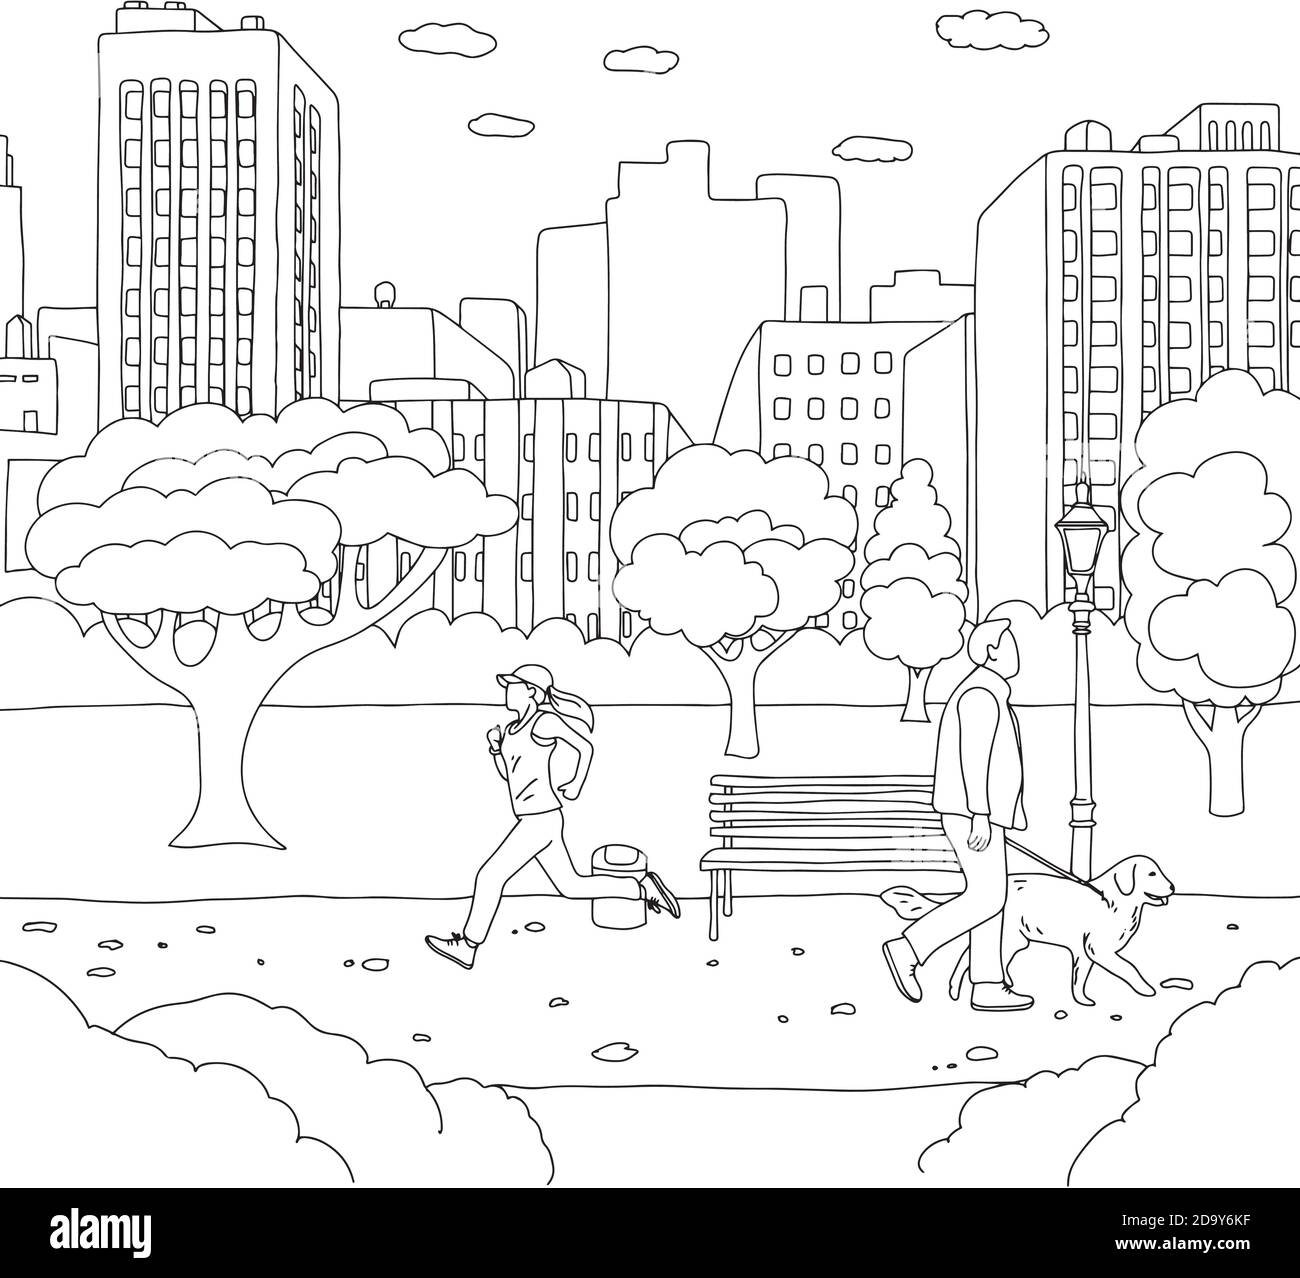 femme jogging et homme marche avec chien dans le parc l'illustration  vectorielle esquisse la main de l'enliseur est dessinée avec des lignes  noires Image Vectorielle Stock - Alamy